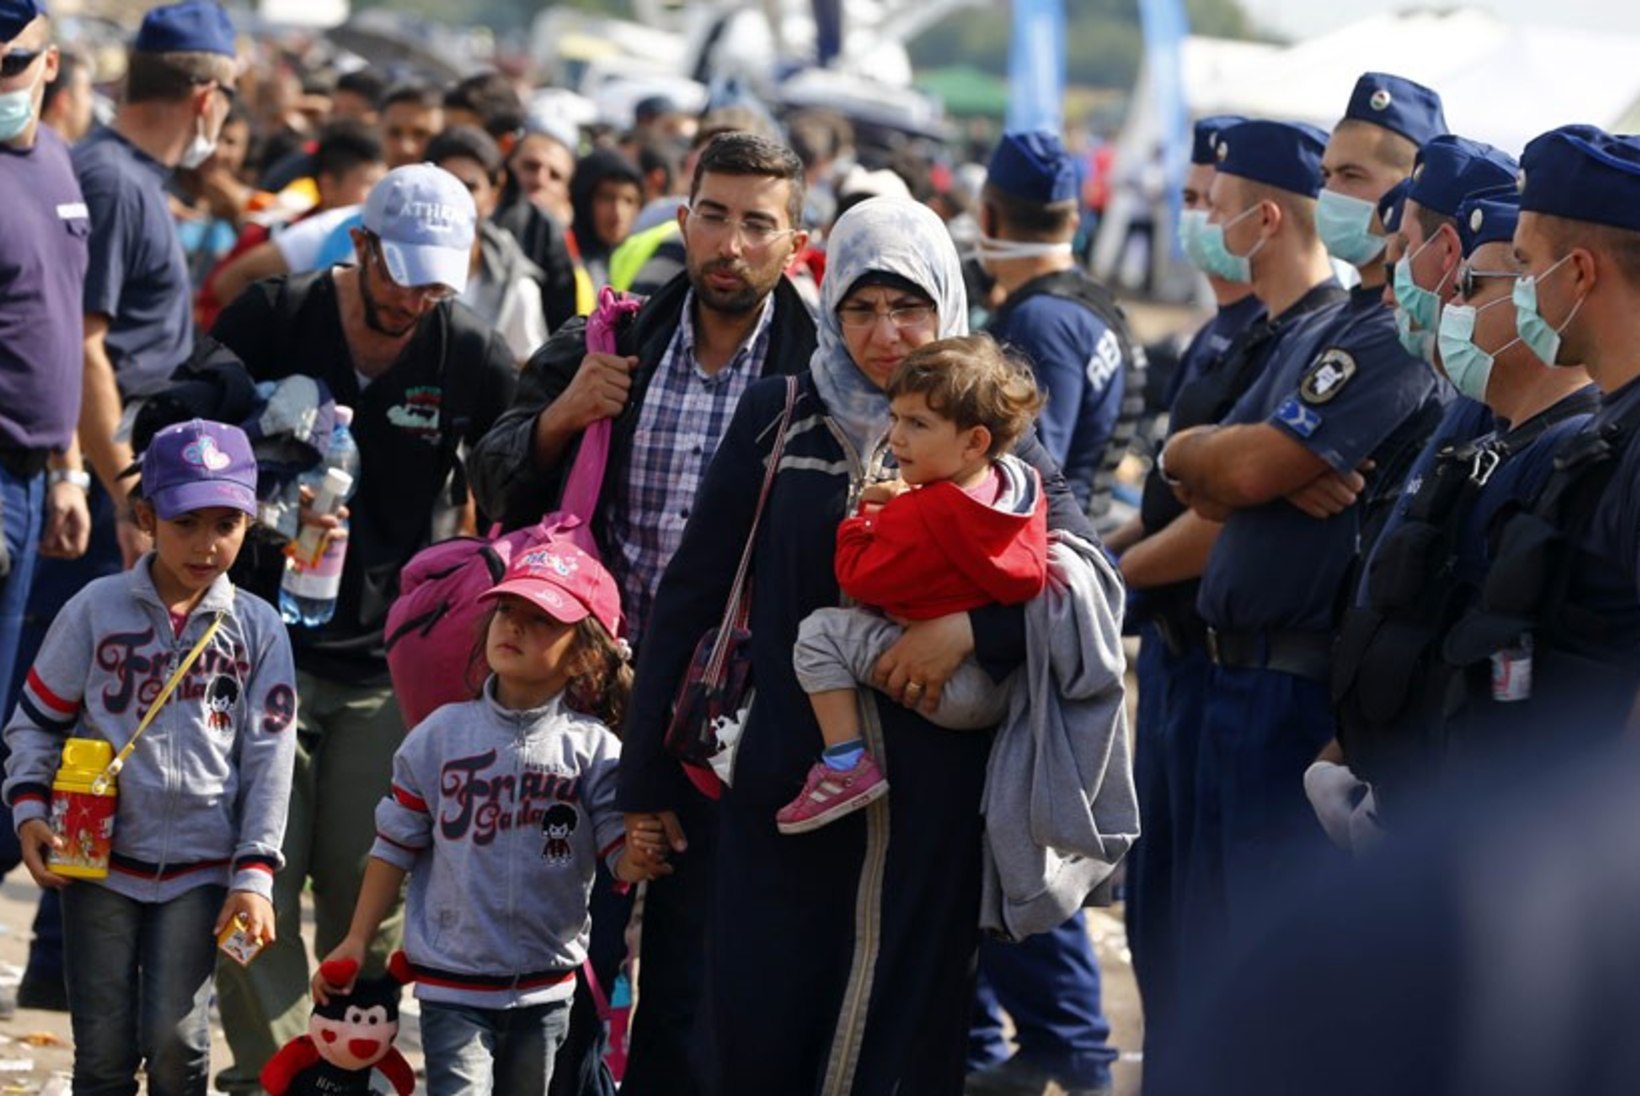 Epidemioloogianõunik Kutsar: Euroopasse saabunud pagulastel on tuvastatud kümmekond erinevat nakkushaigust